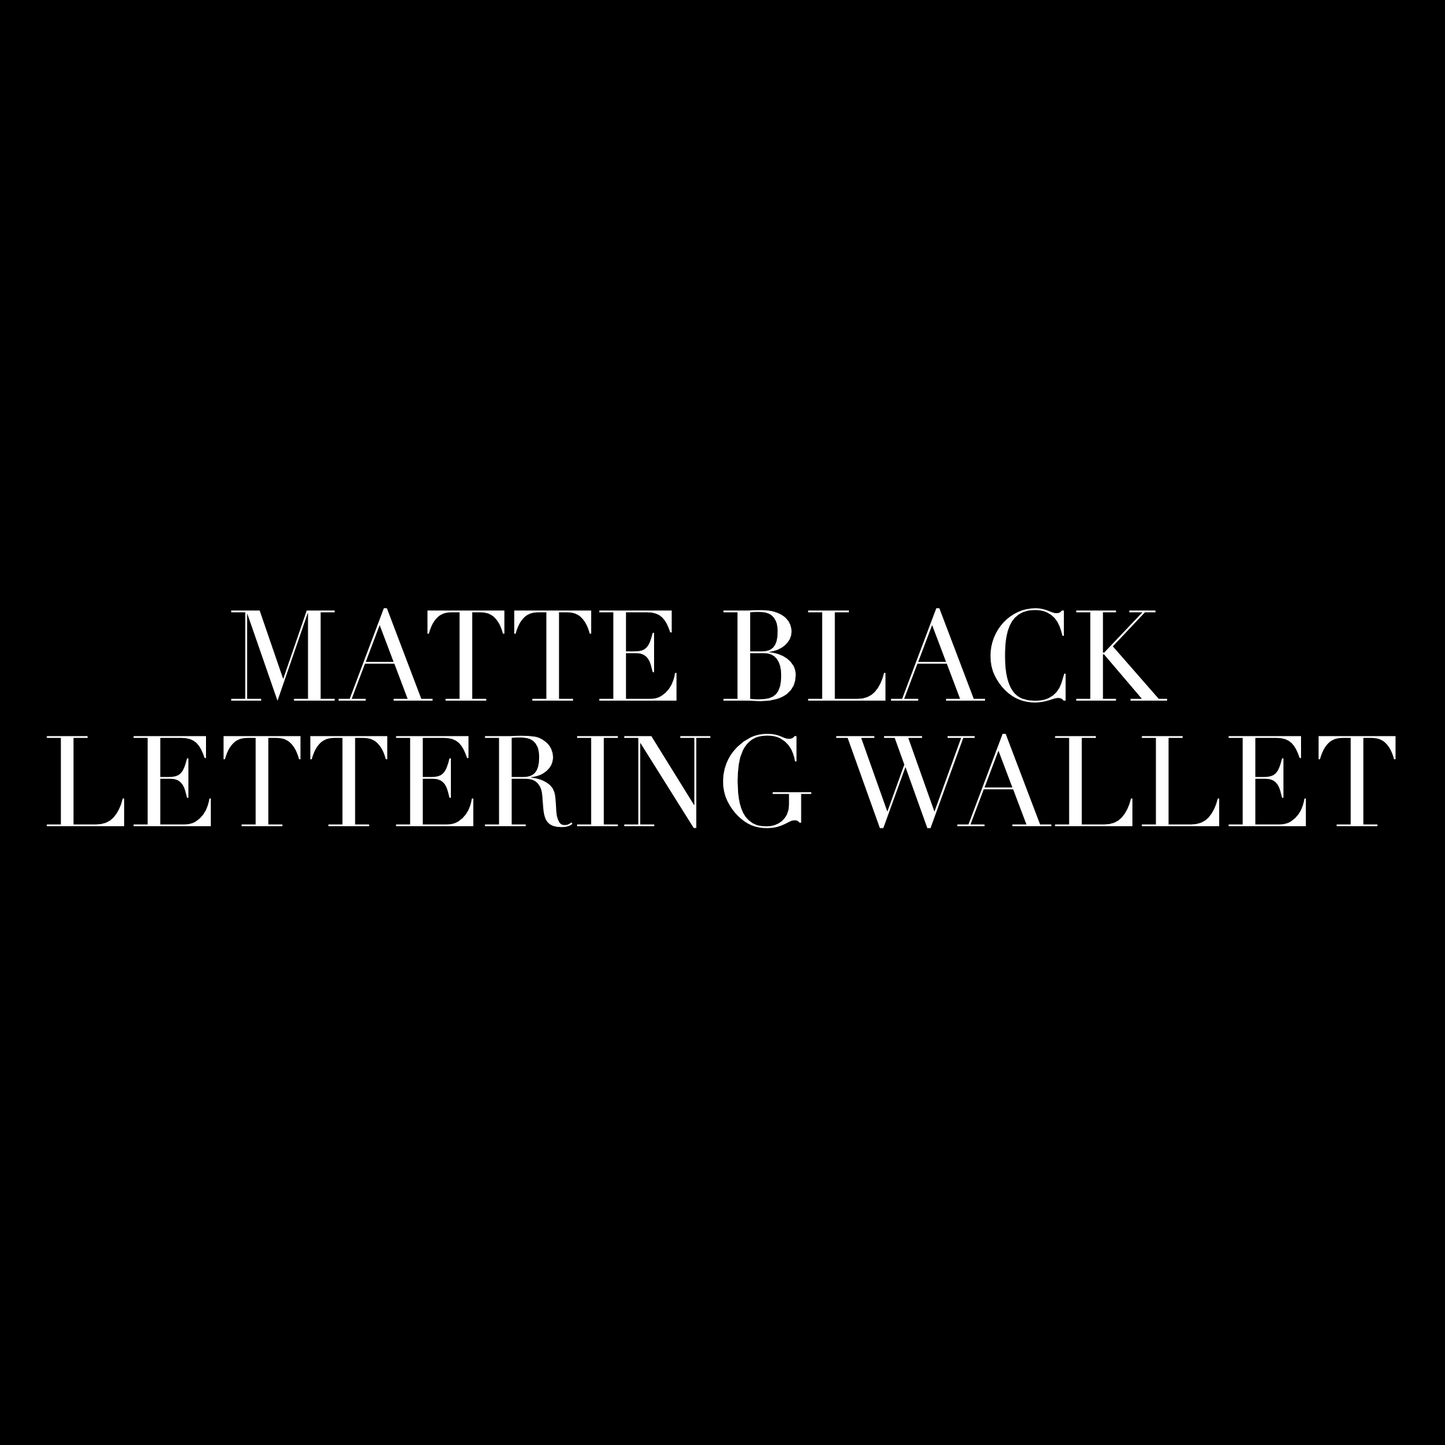 Matte Black Lettering Wallet